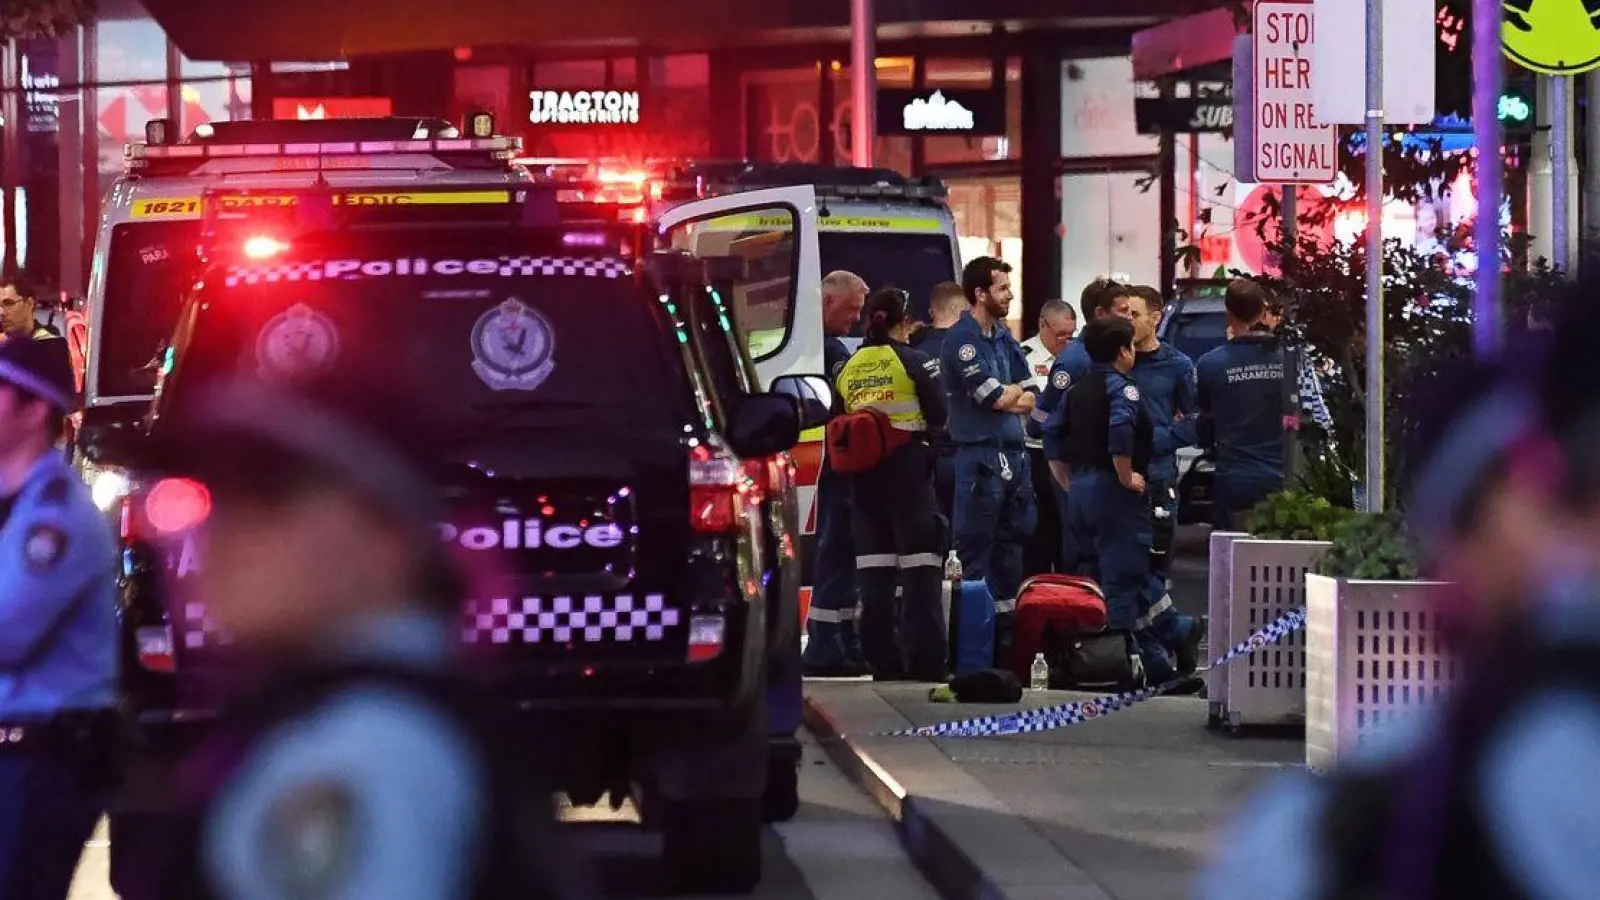 Rettungskräfte sind an der Bondi Junction zu sehen, nachdem mehrere Menschen in dem Einkaufszentrum in Sydney niedergestochen wurden. (Foto: Steven Saphore/AAP/dpa)